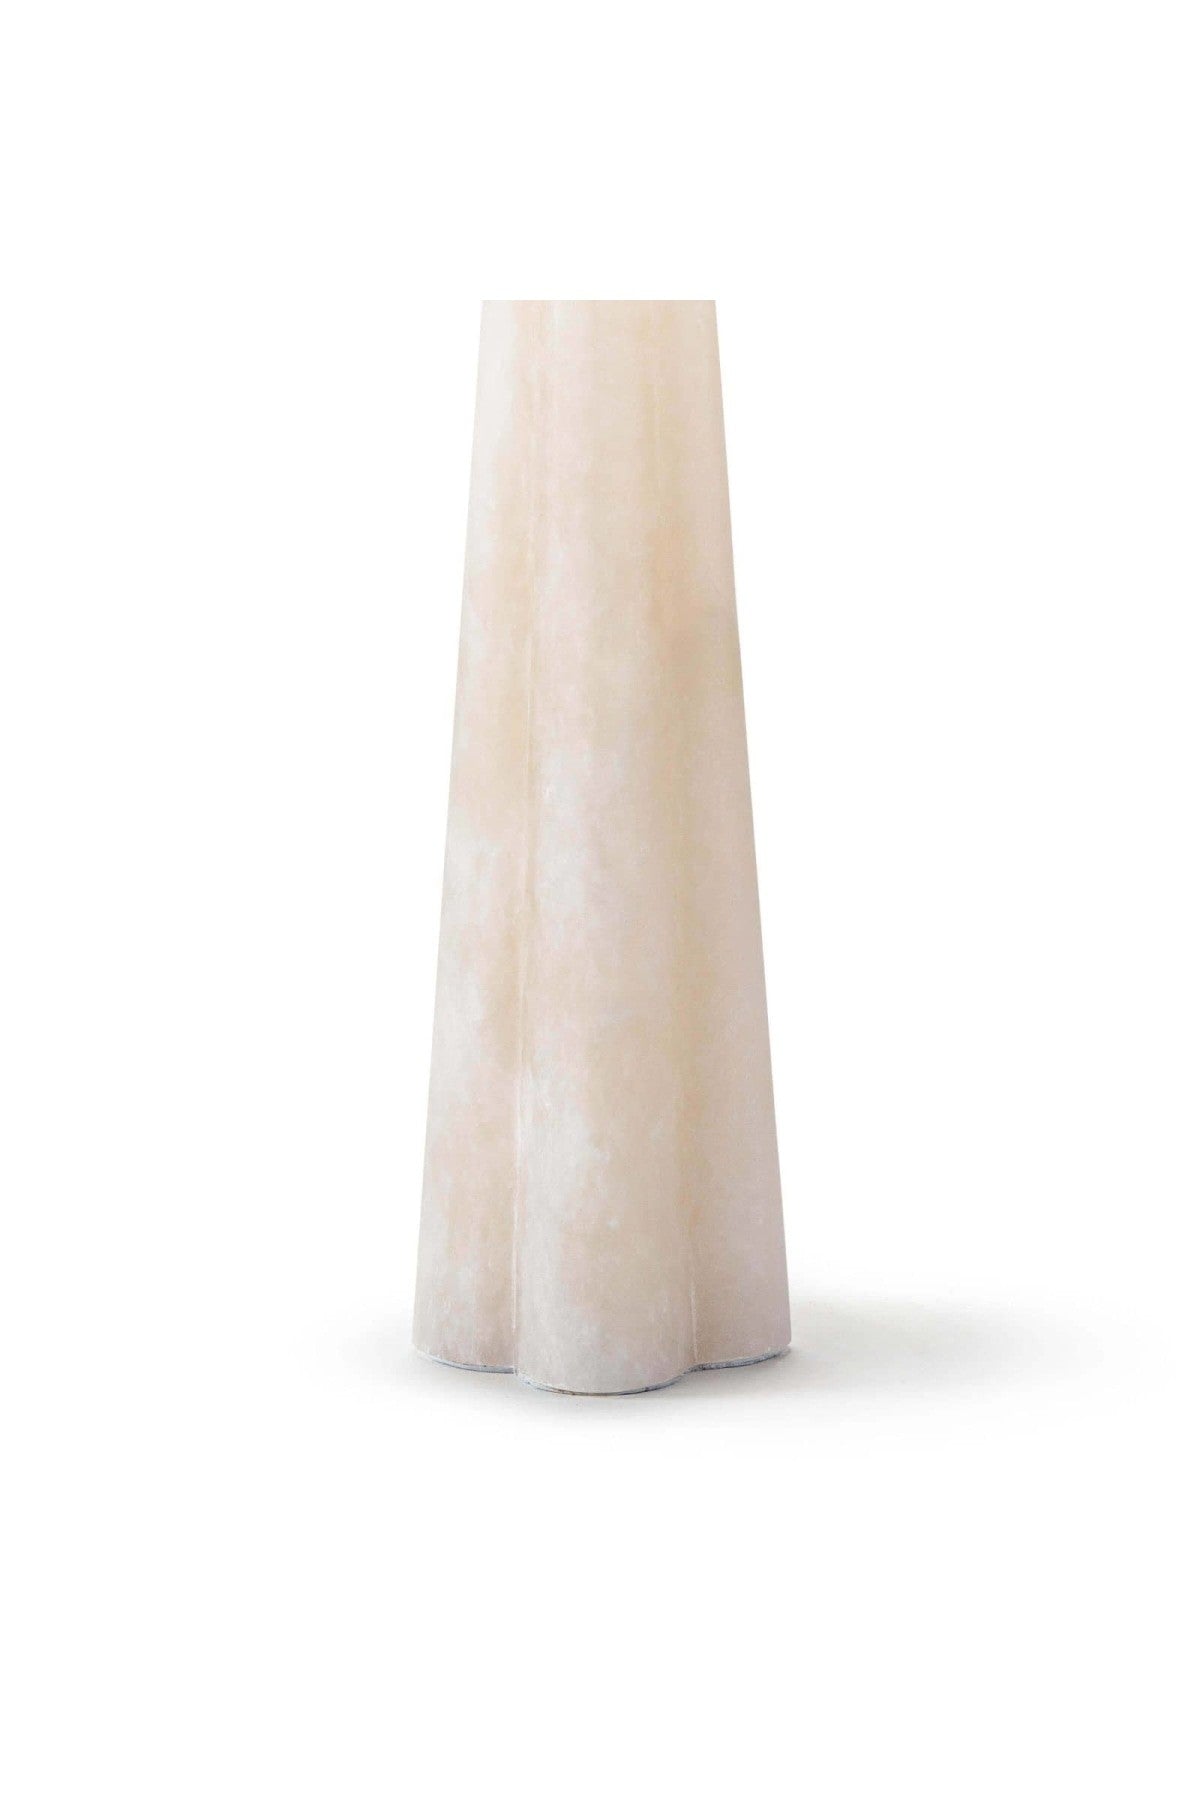 Regina Andrew Quatrefoil Alabaster Table Lamp